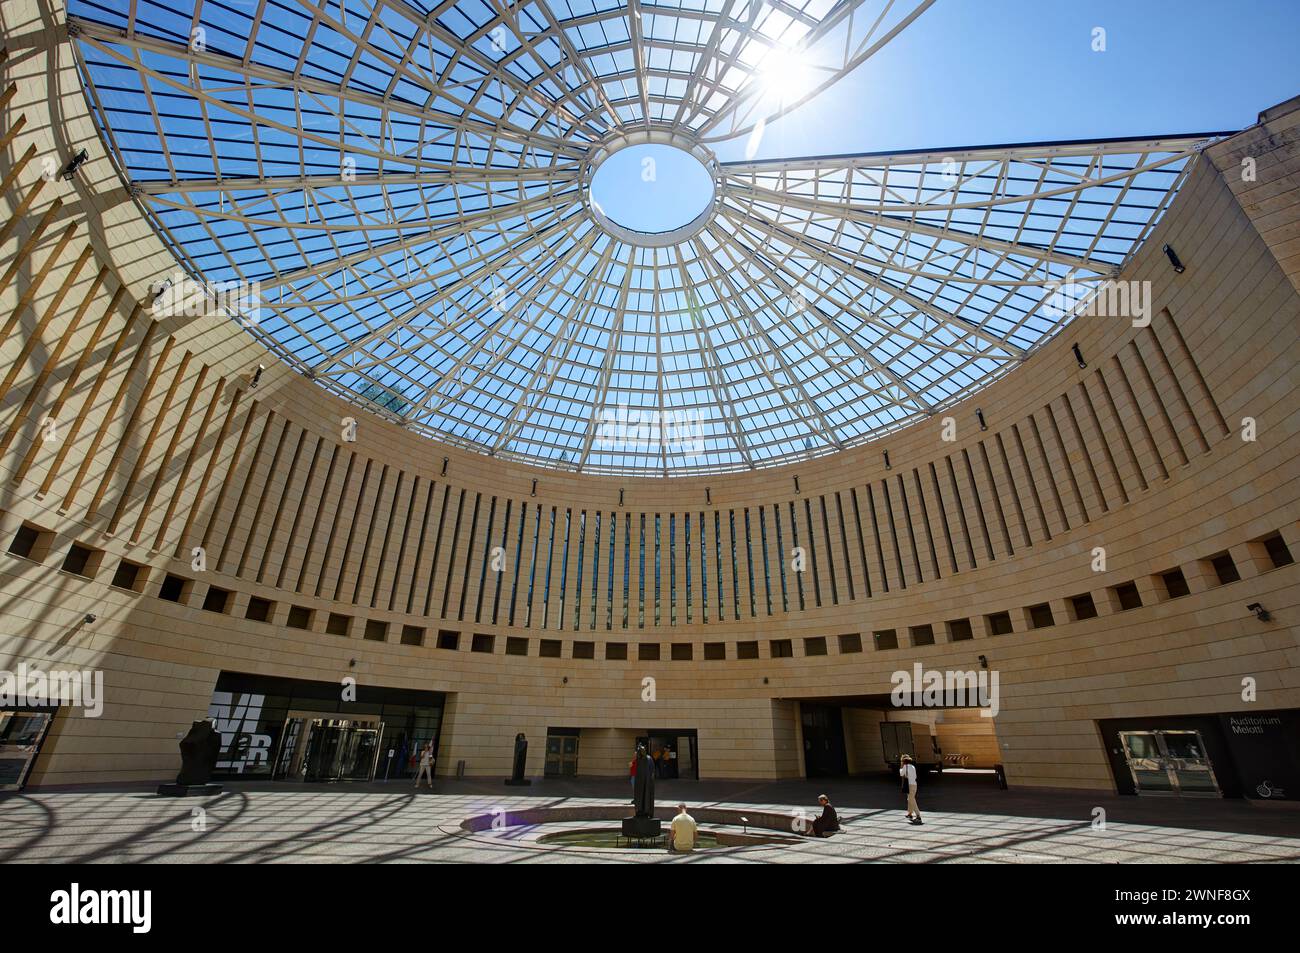 L'architecture moderne du Musée MART, trente, Italie Banque D'Images